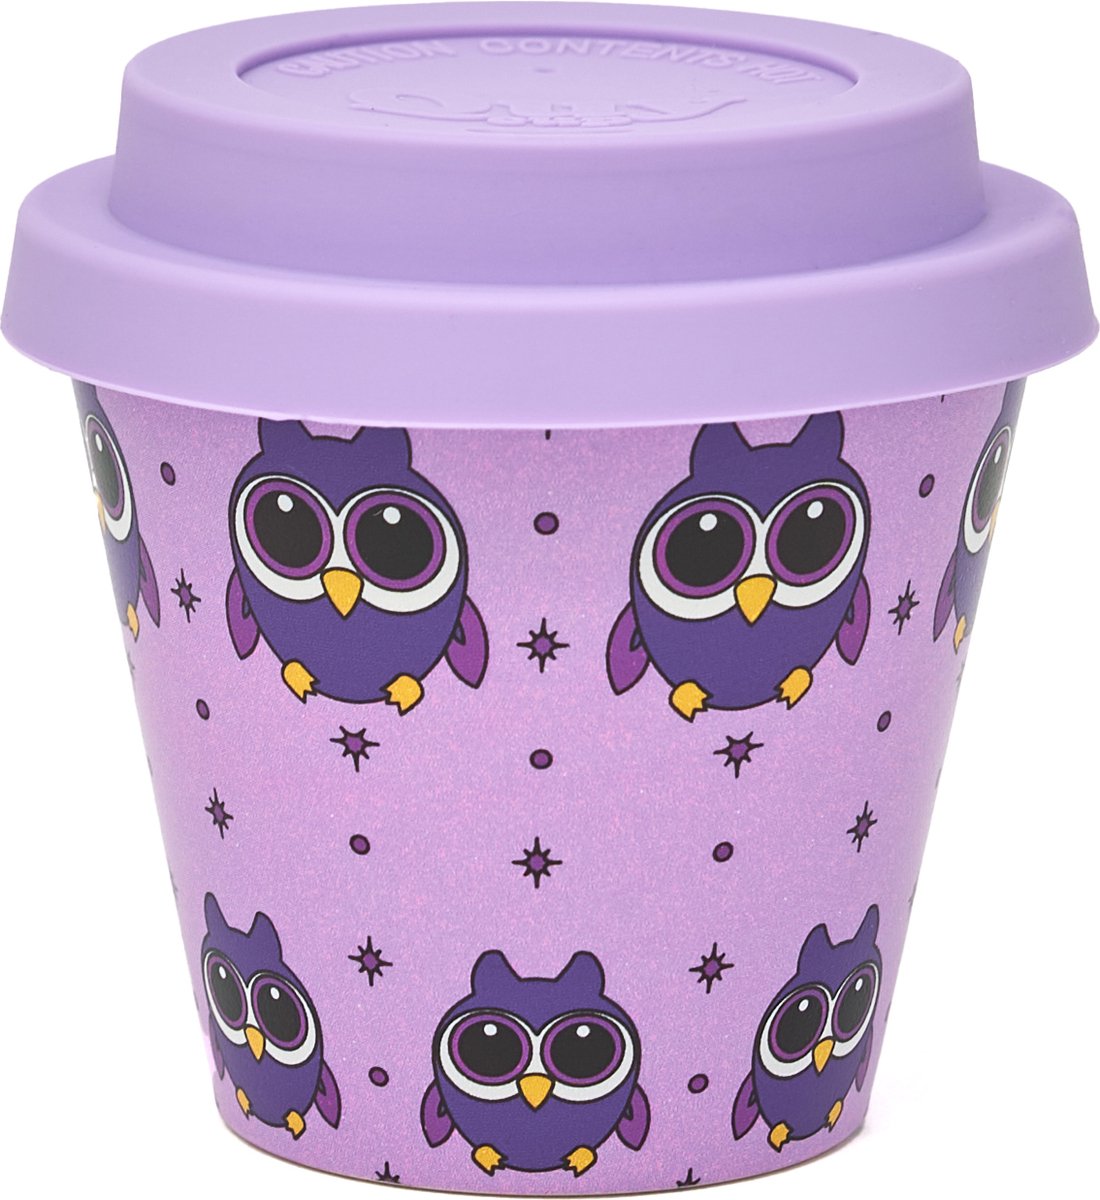 Quy Cup - 90ml Ecologische Reis Beker - Espressobeker “Owl” met Purple Siliconen deksel